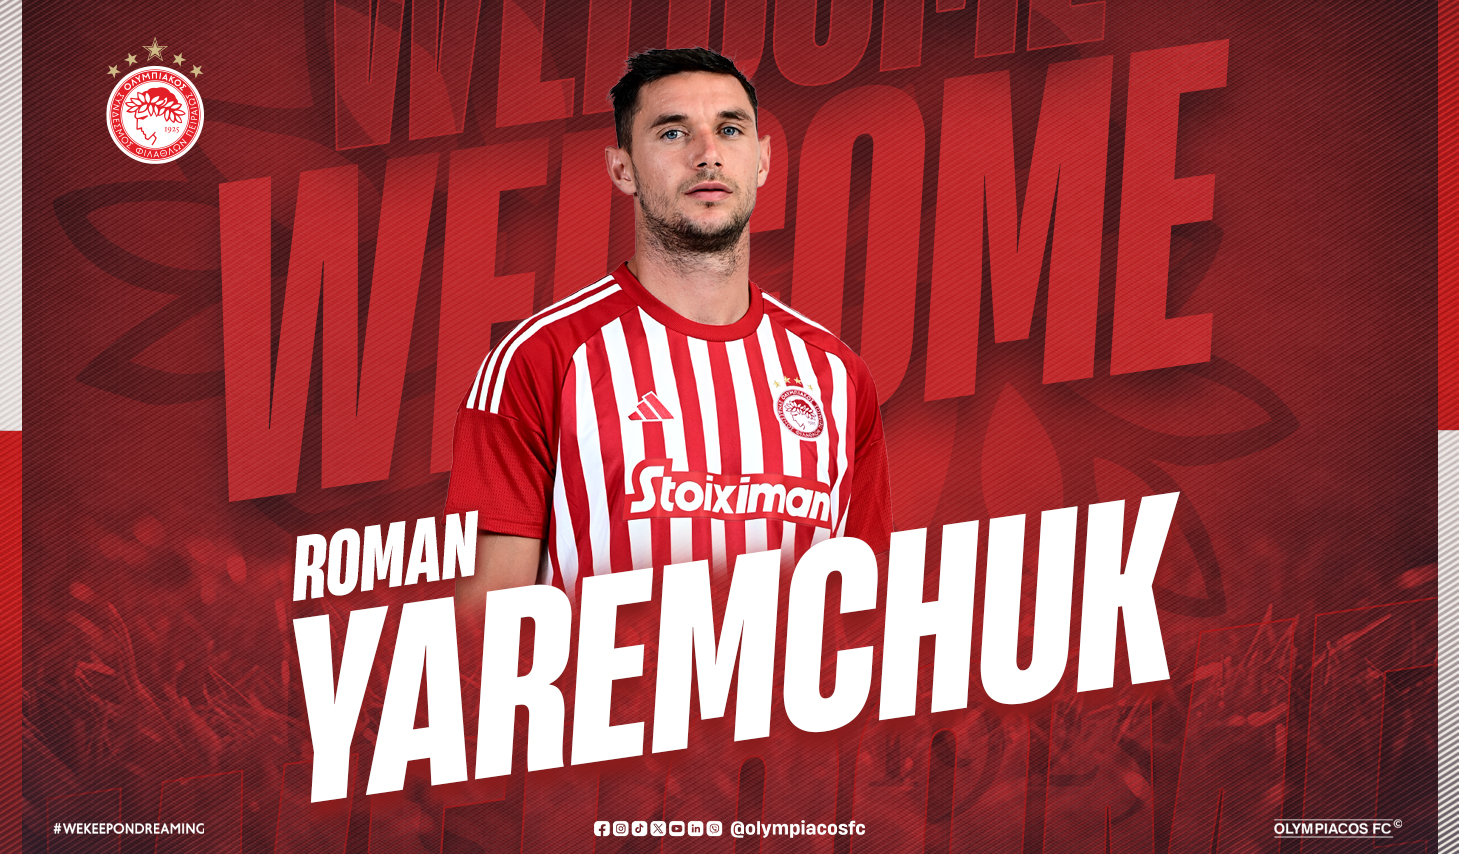 Roman Yaremchuk rejoint l’Olympiacos